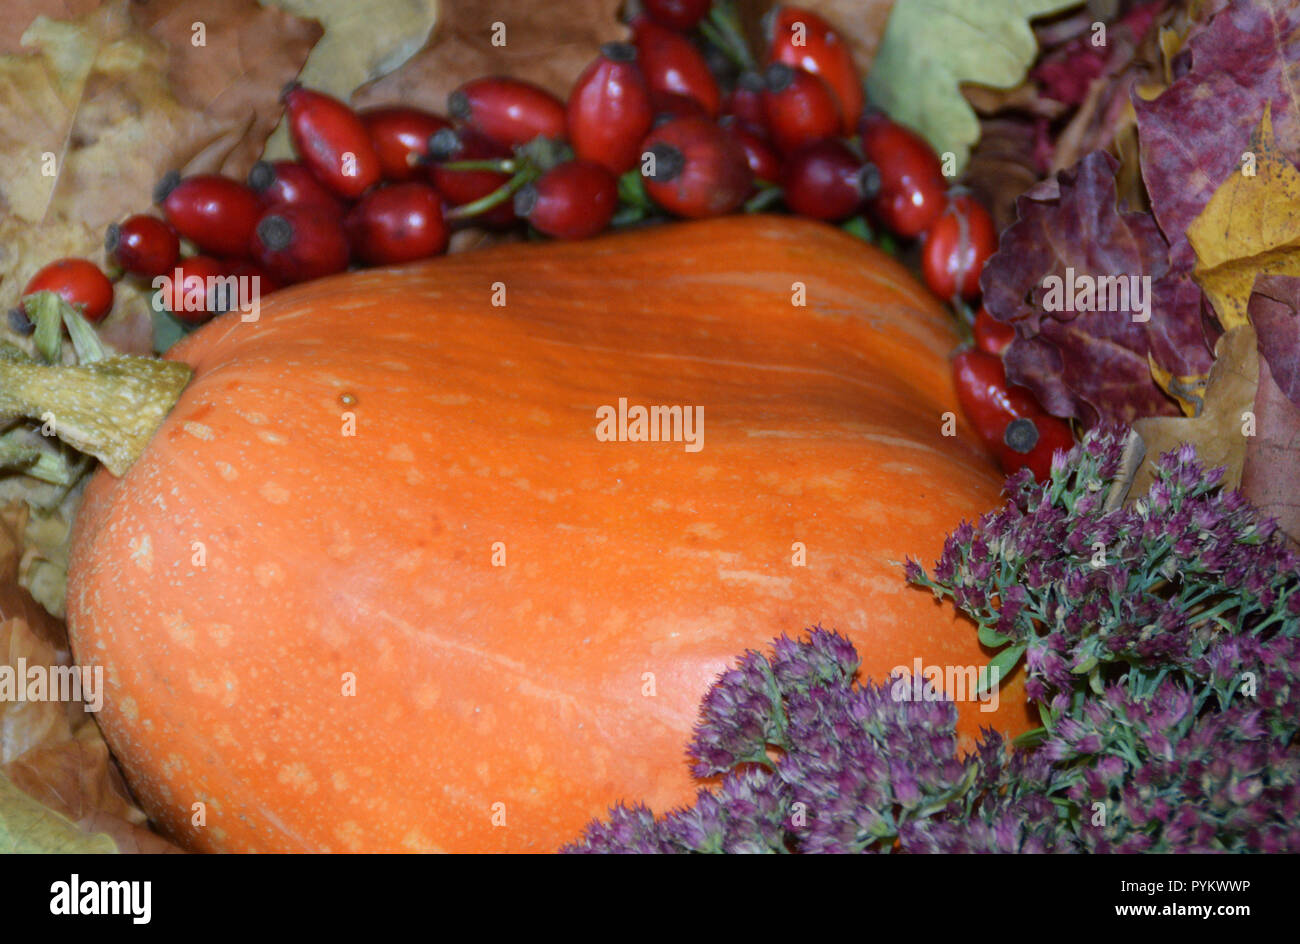 Autumn harvest in varie composizioni. Arancione zucca gialla, mela cotogna, rosa canina frutti, foglie di autunno e fiori. Foto Stock